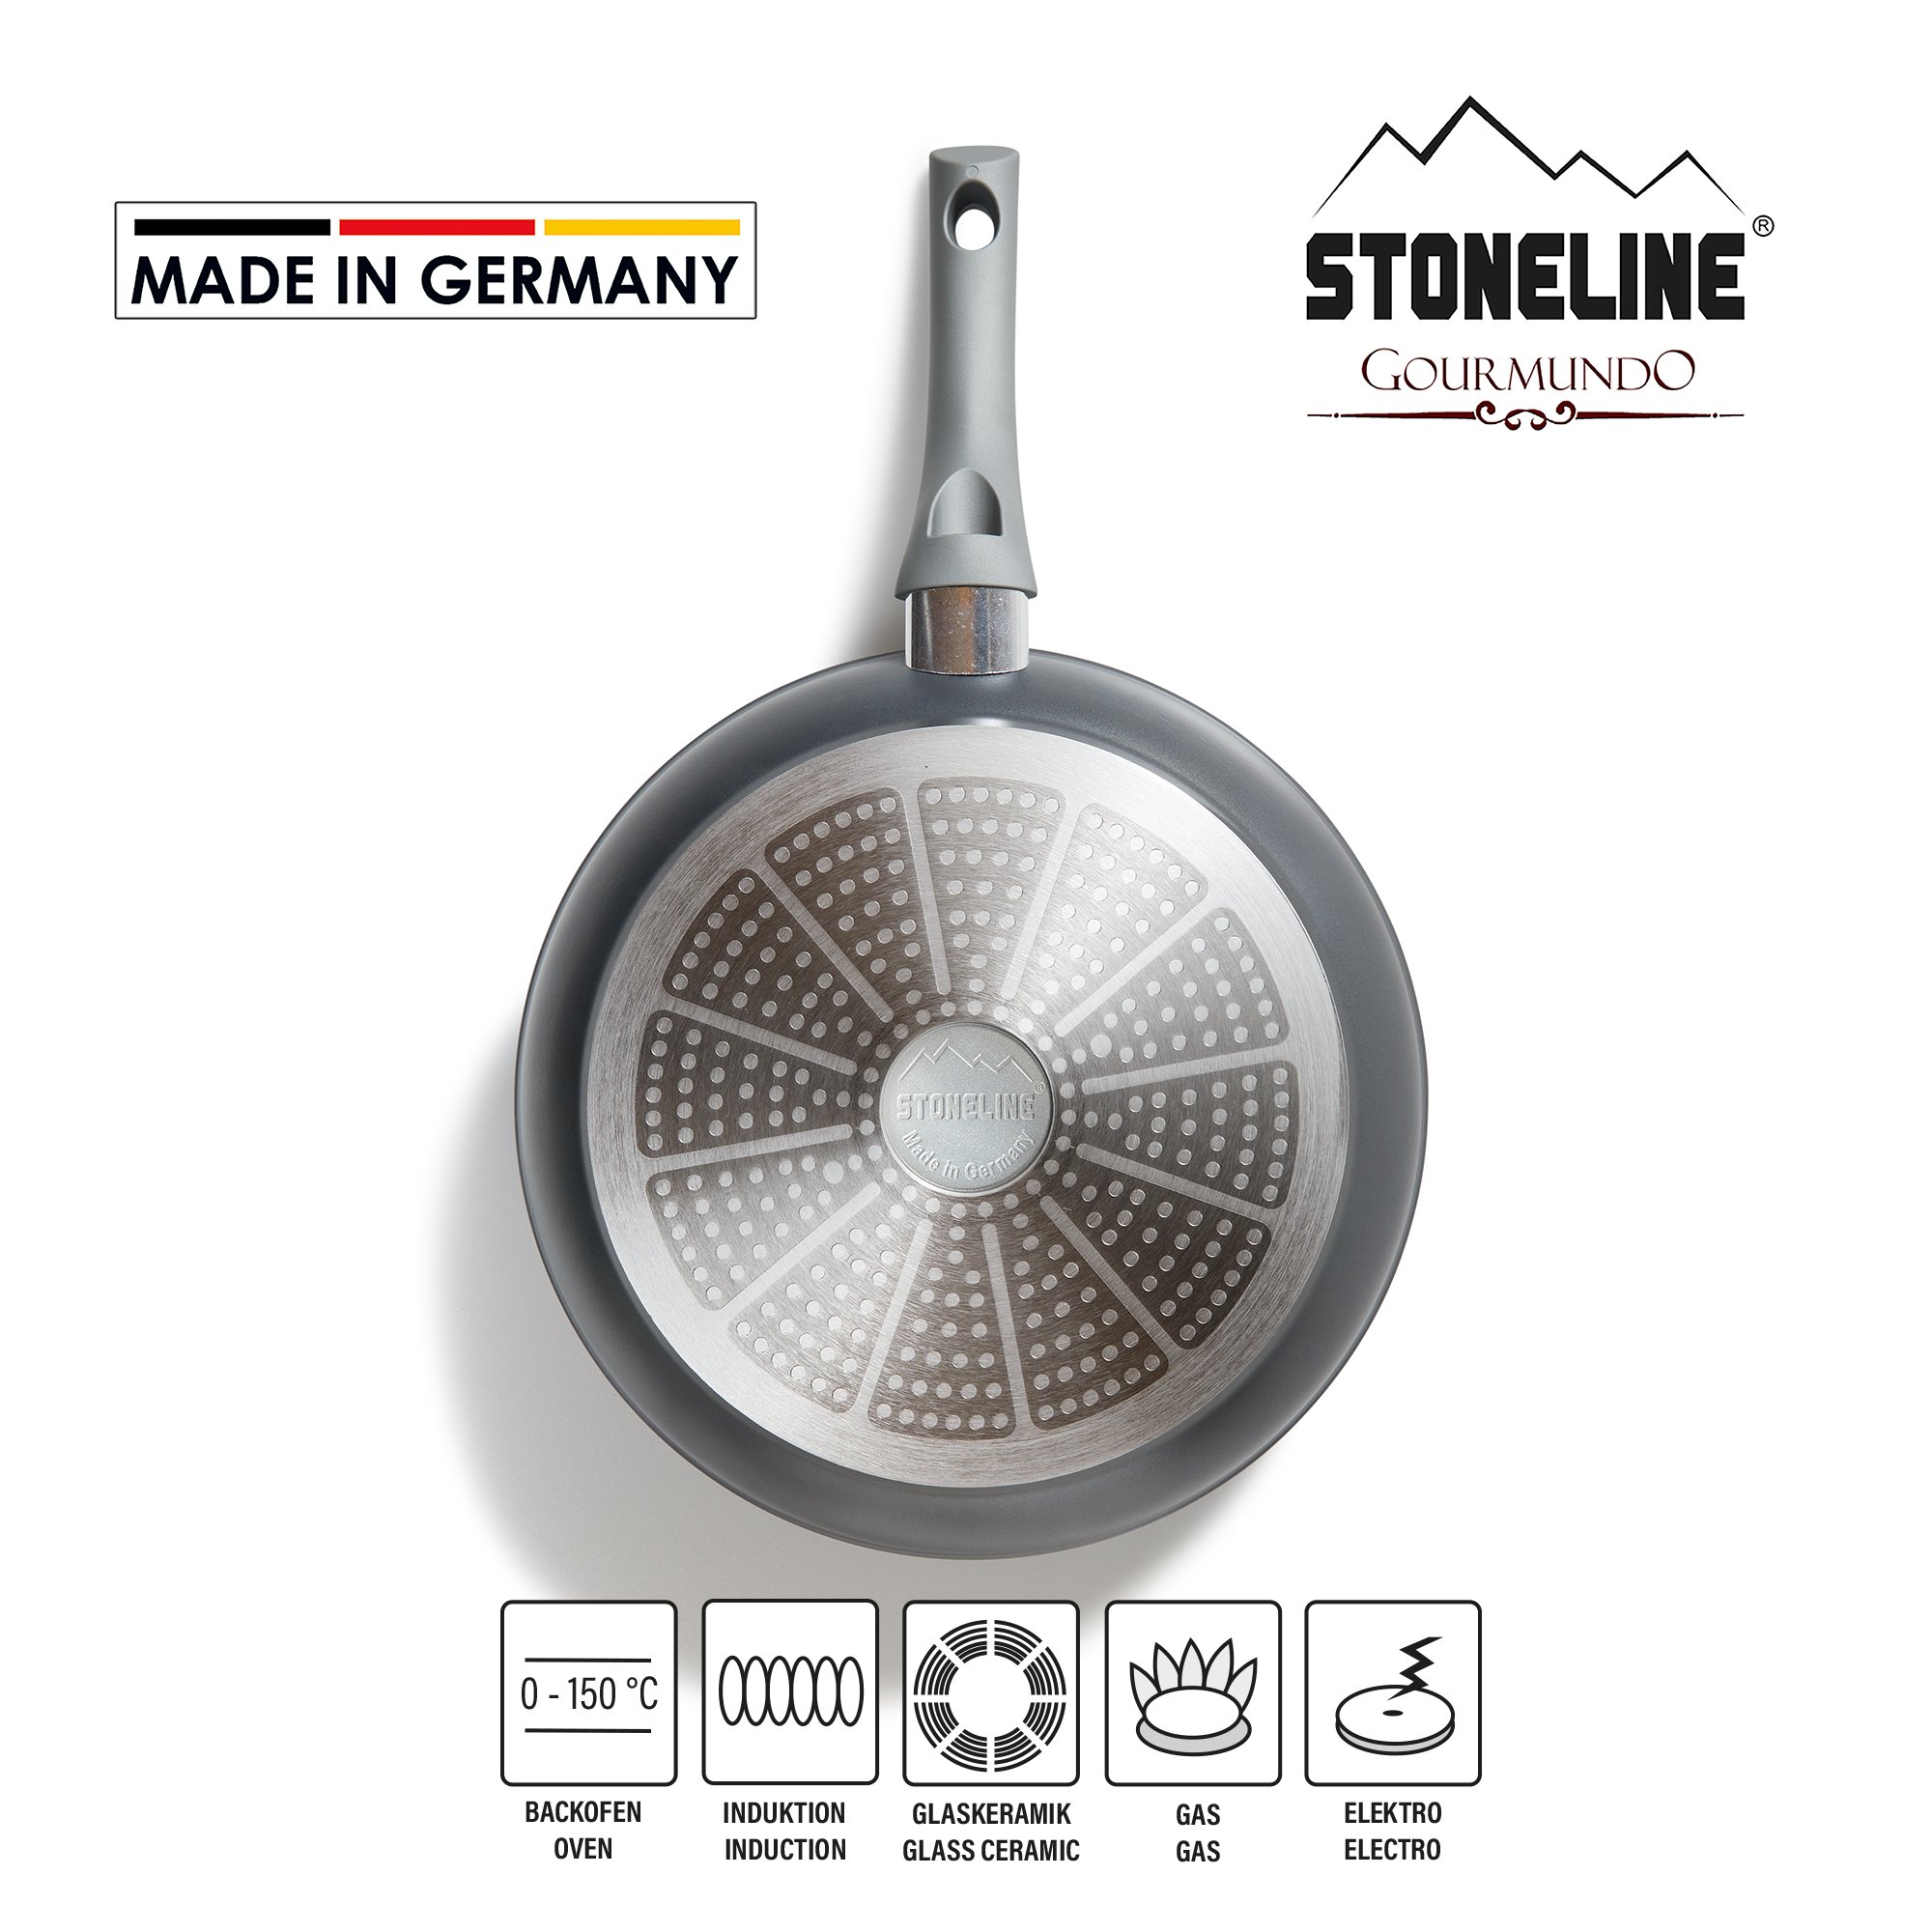 Stoneline Bratpfanne 28cm / 5 1cm Induktion TVII Wahl 18832 online kaufen |  eBay